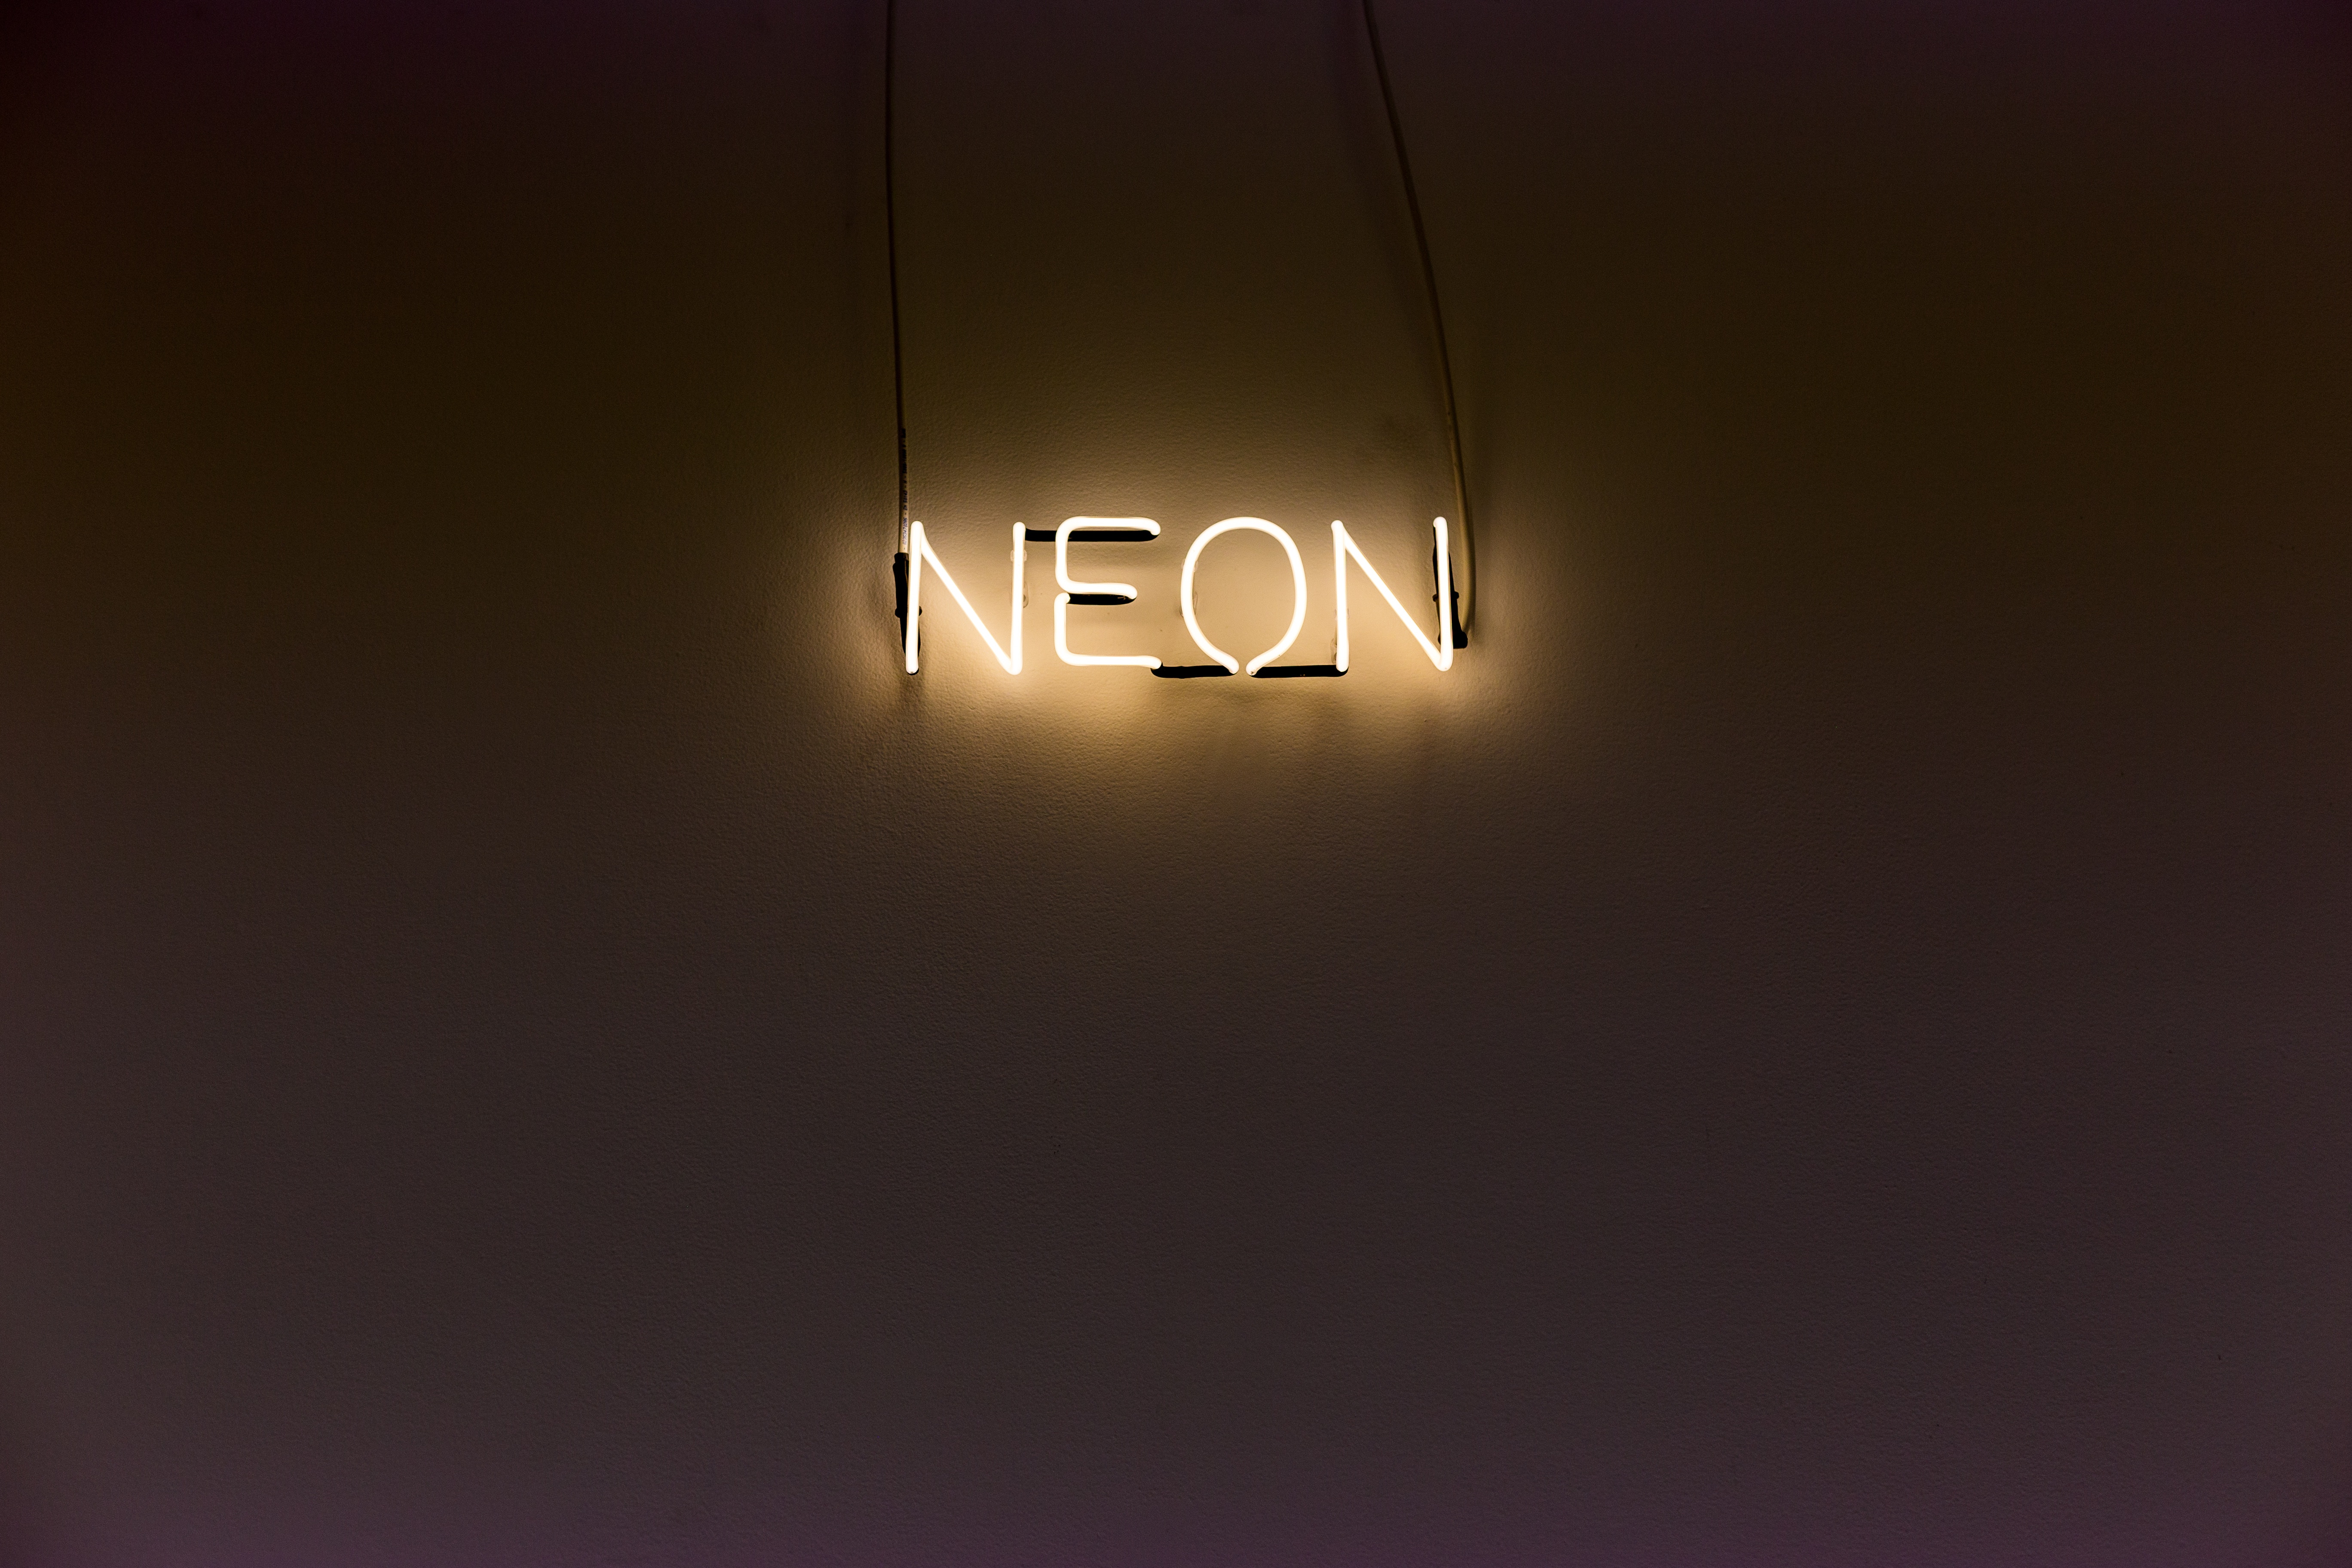 neon, words, wall, backlight, illumination, inscription 4K